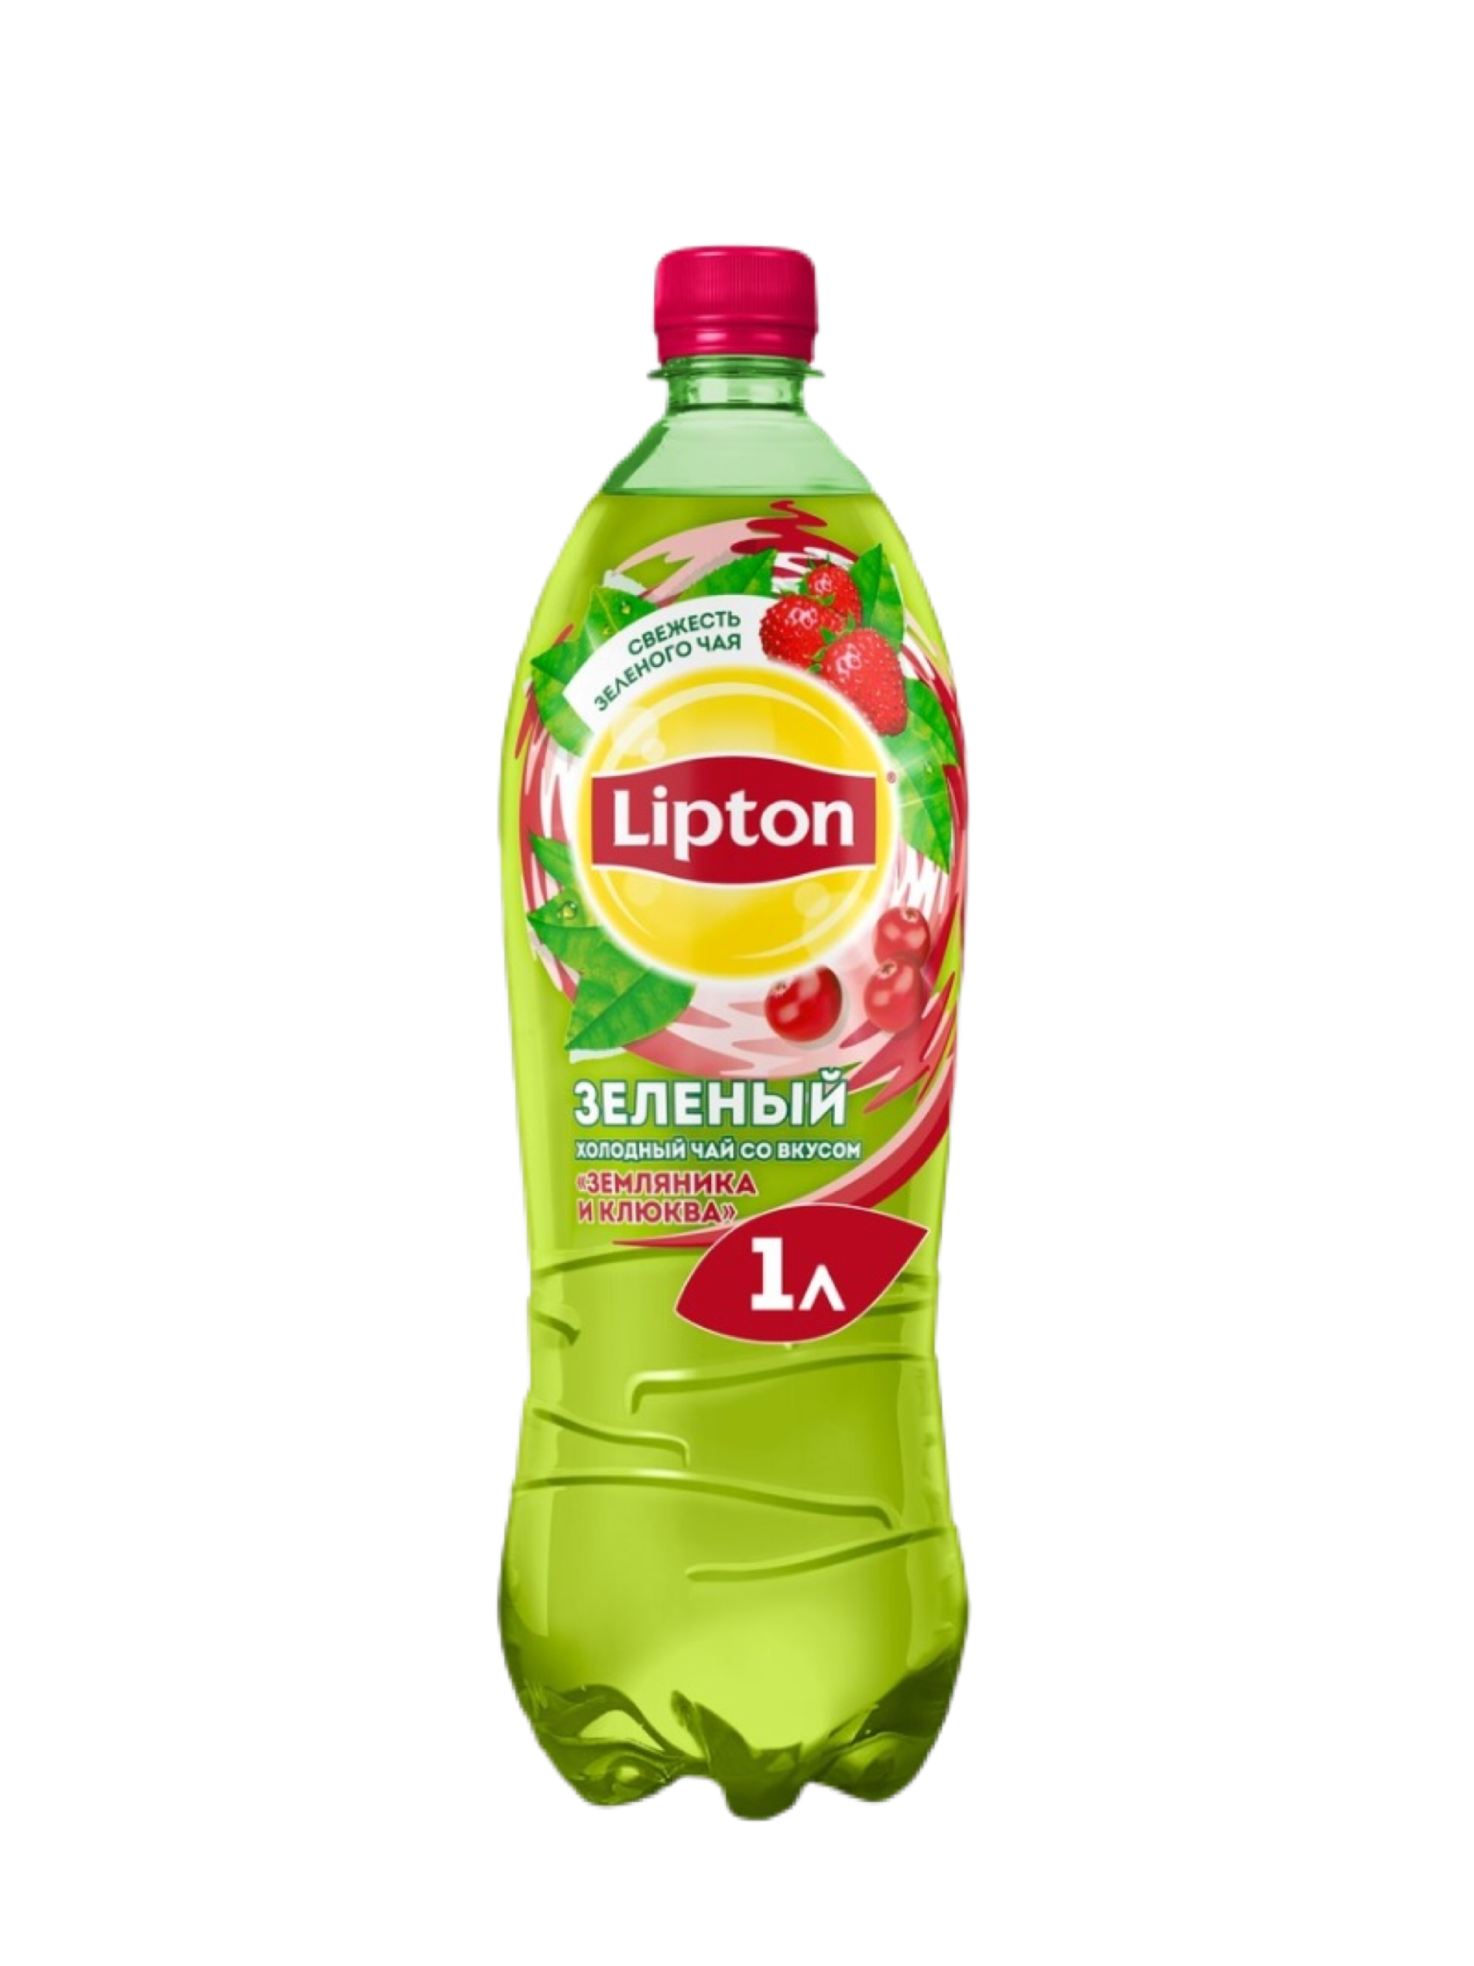 Чай Липтон 0.5 малина. Липтон зеленый с земляникой. Липтон зелёный чай в бутылке 05. Липтон 0,5 и 1 л.